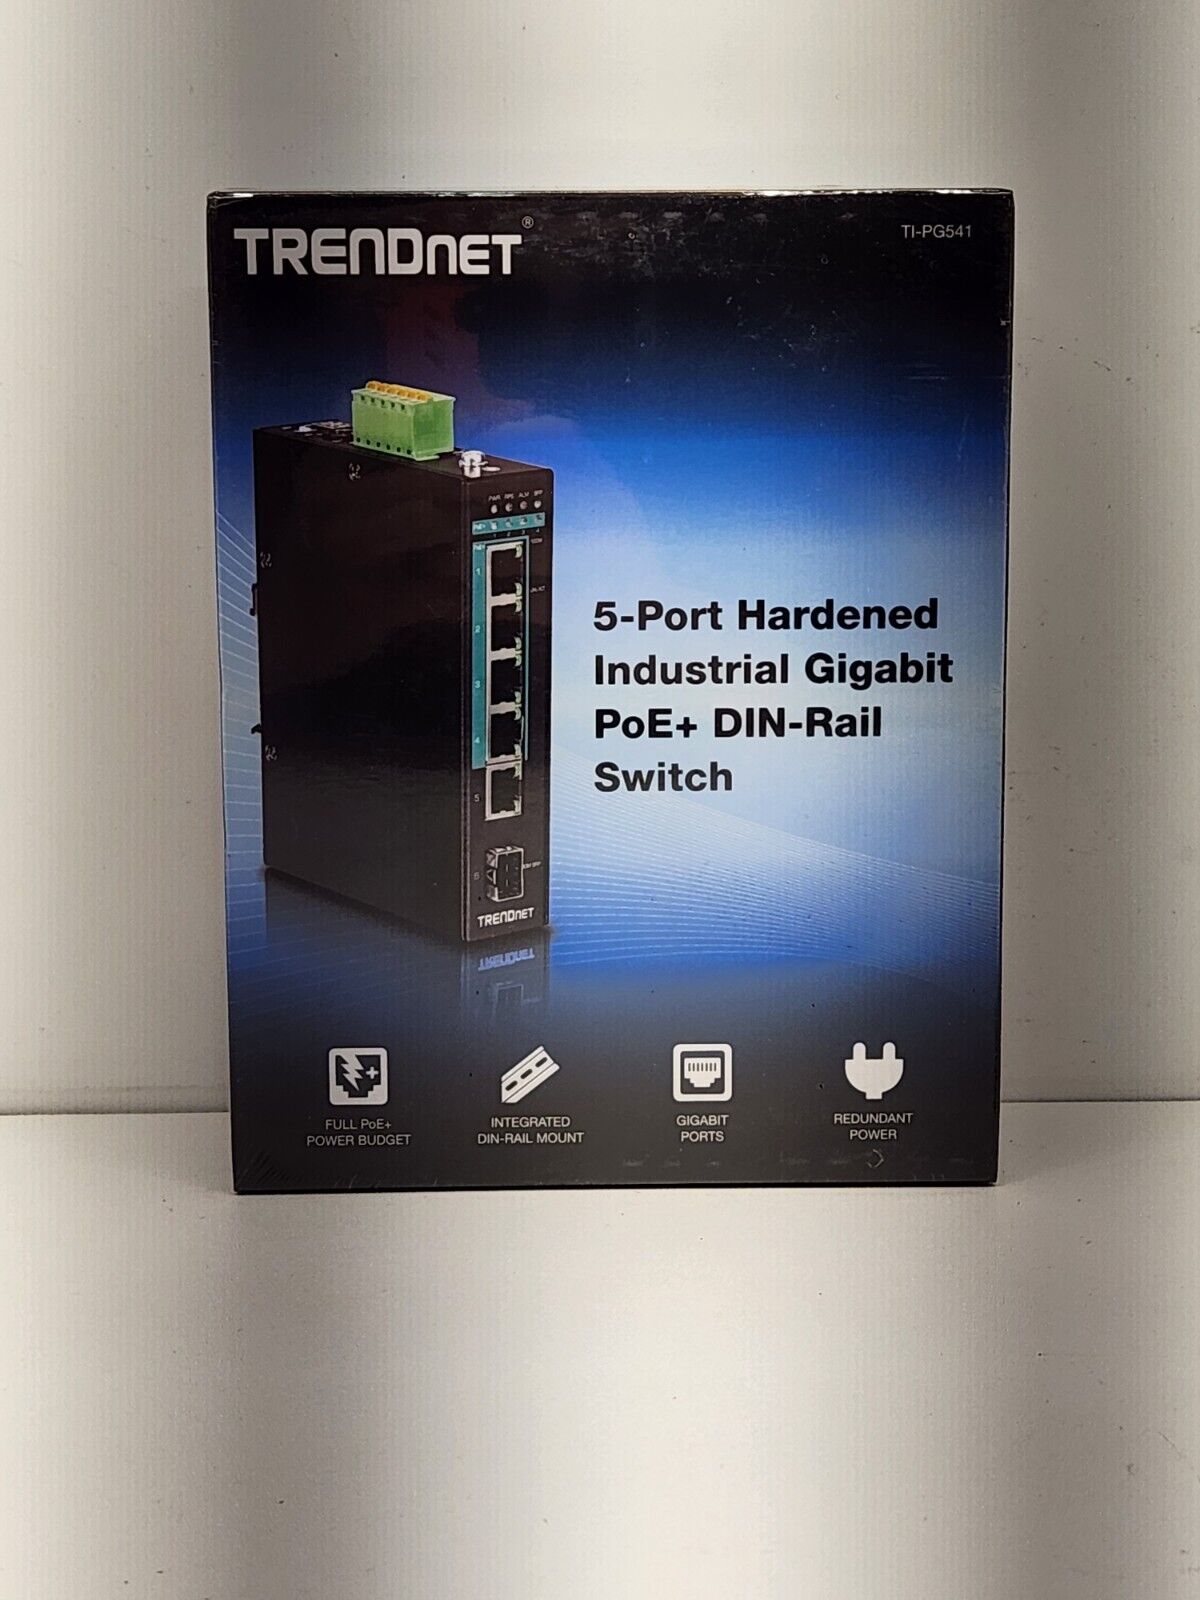 TRENDnet TI-PG541 5-port Hardened Industrial Gigabit PoE+ DIN-Rail Switch